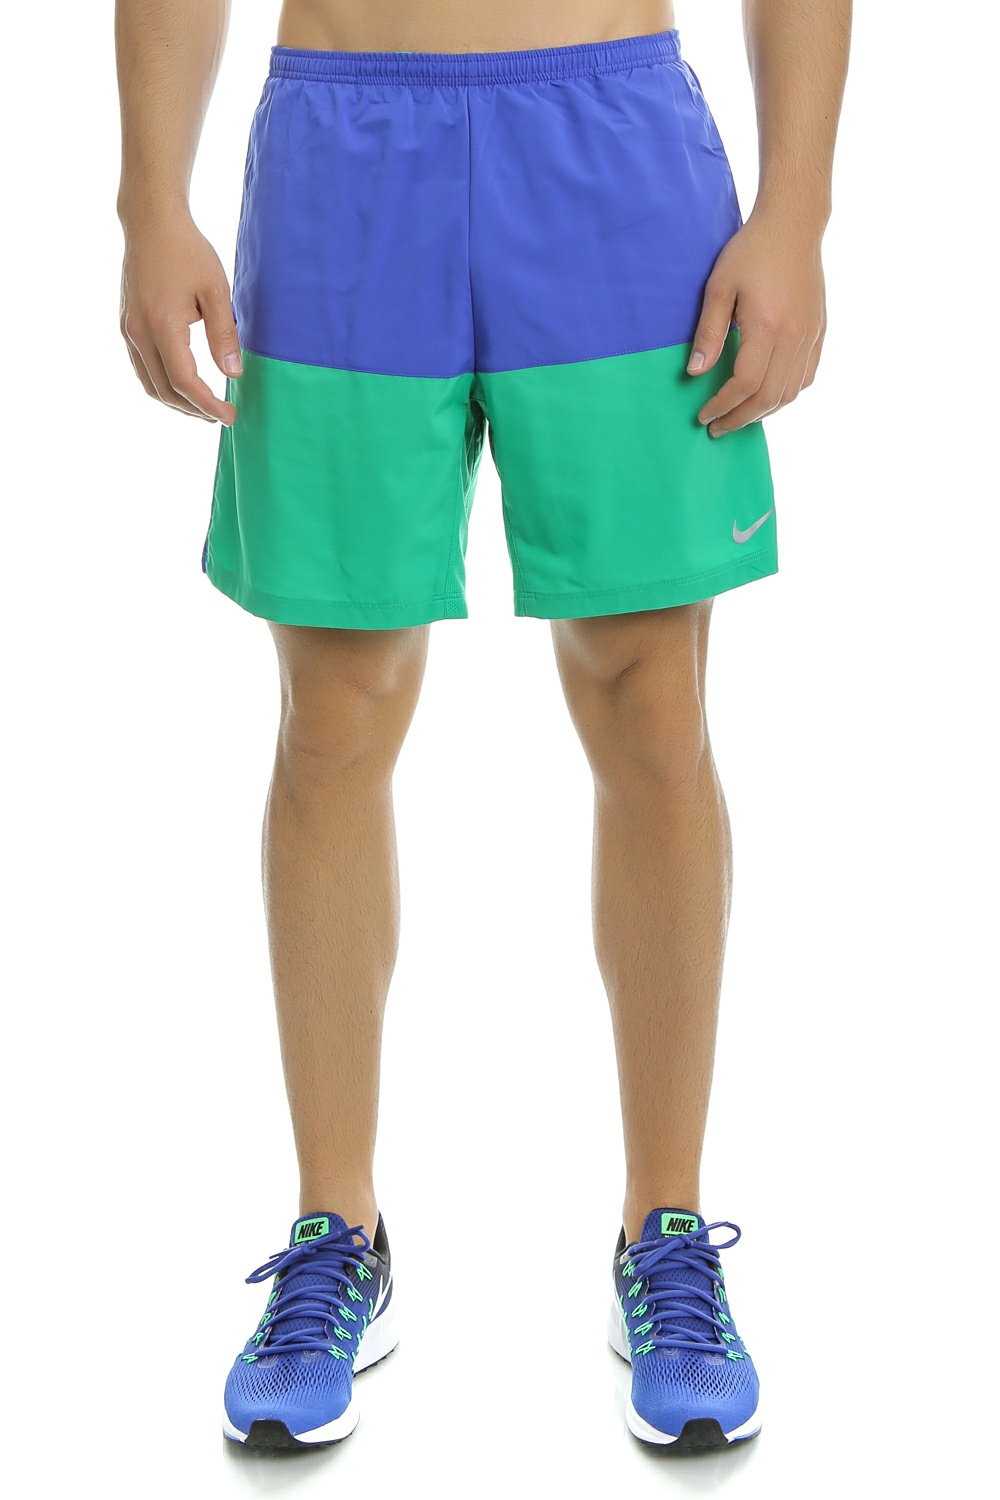 Ανδρικά/Ρούχα/Σορτς-Βερμούδες/Αθλητικά NIKE - Ανδρικό αθλητικό σορτς Nike 7" DISTANCE SHORT (SP15) μπλε - πράσινο